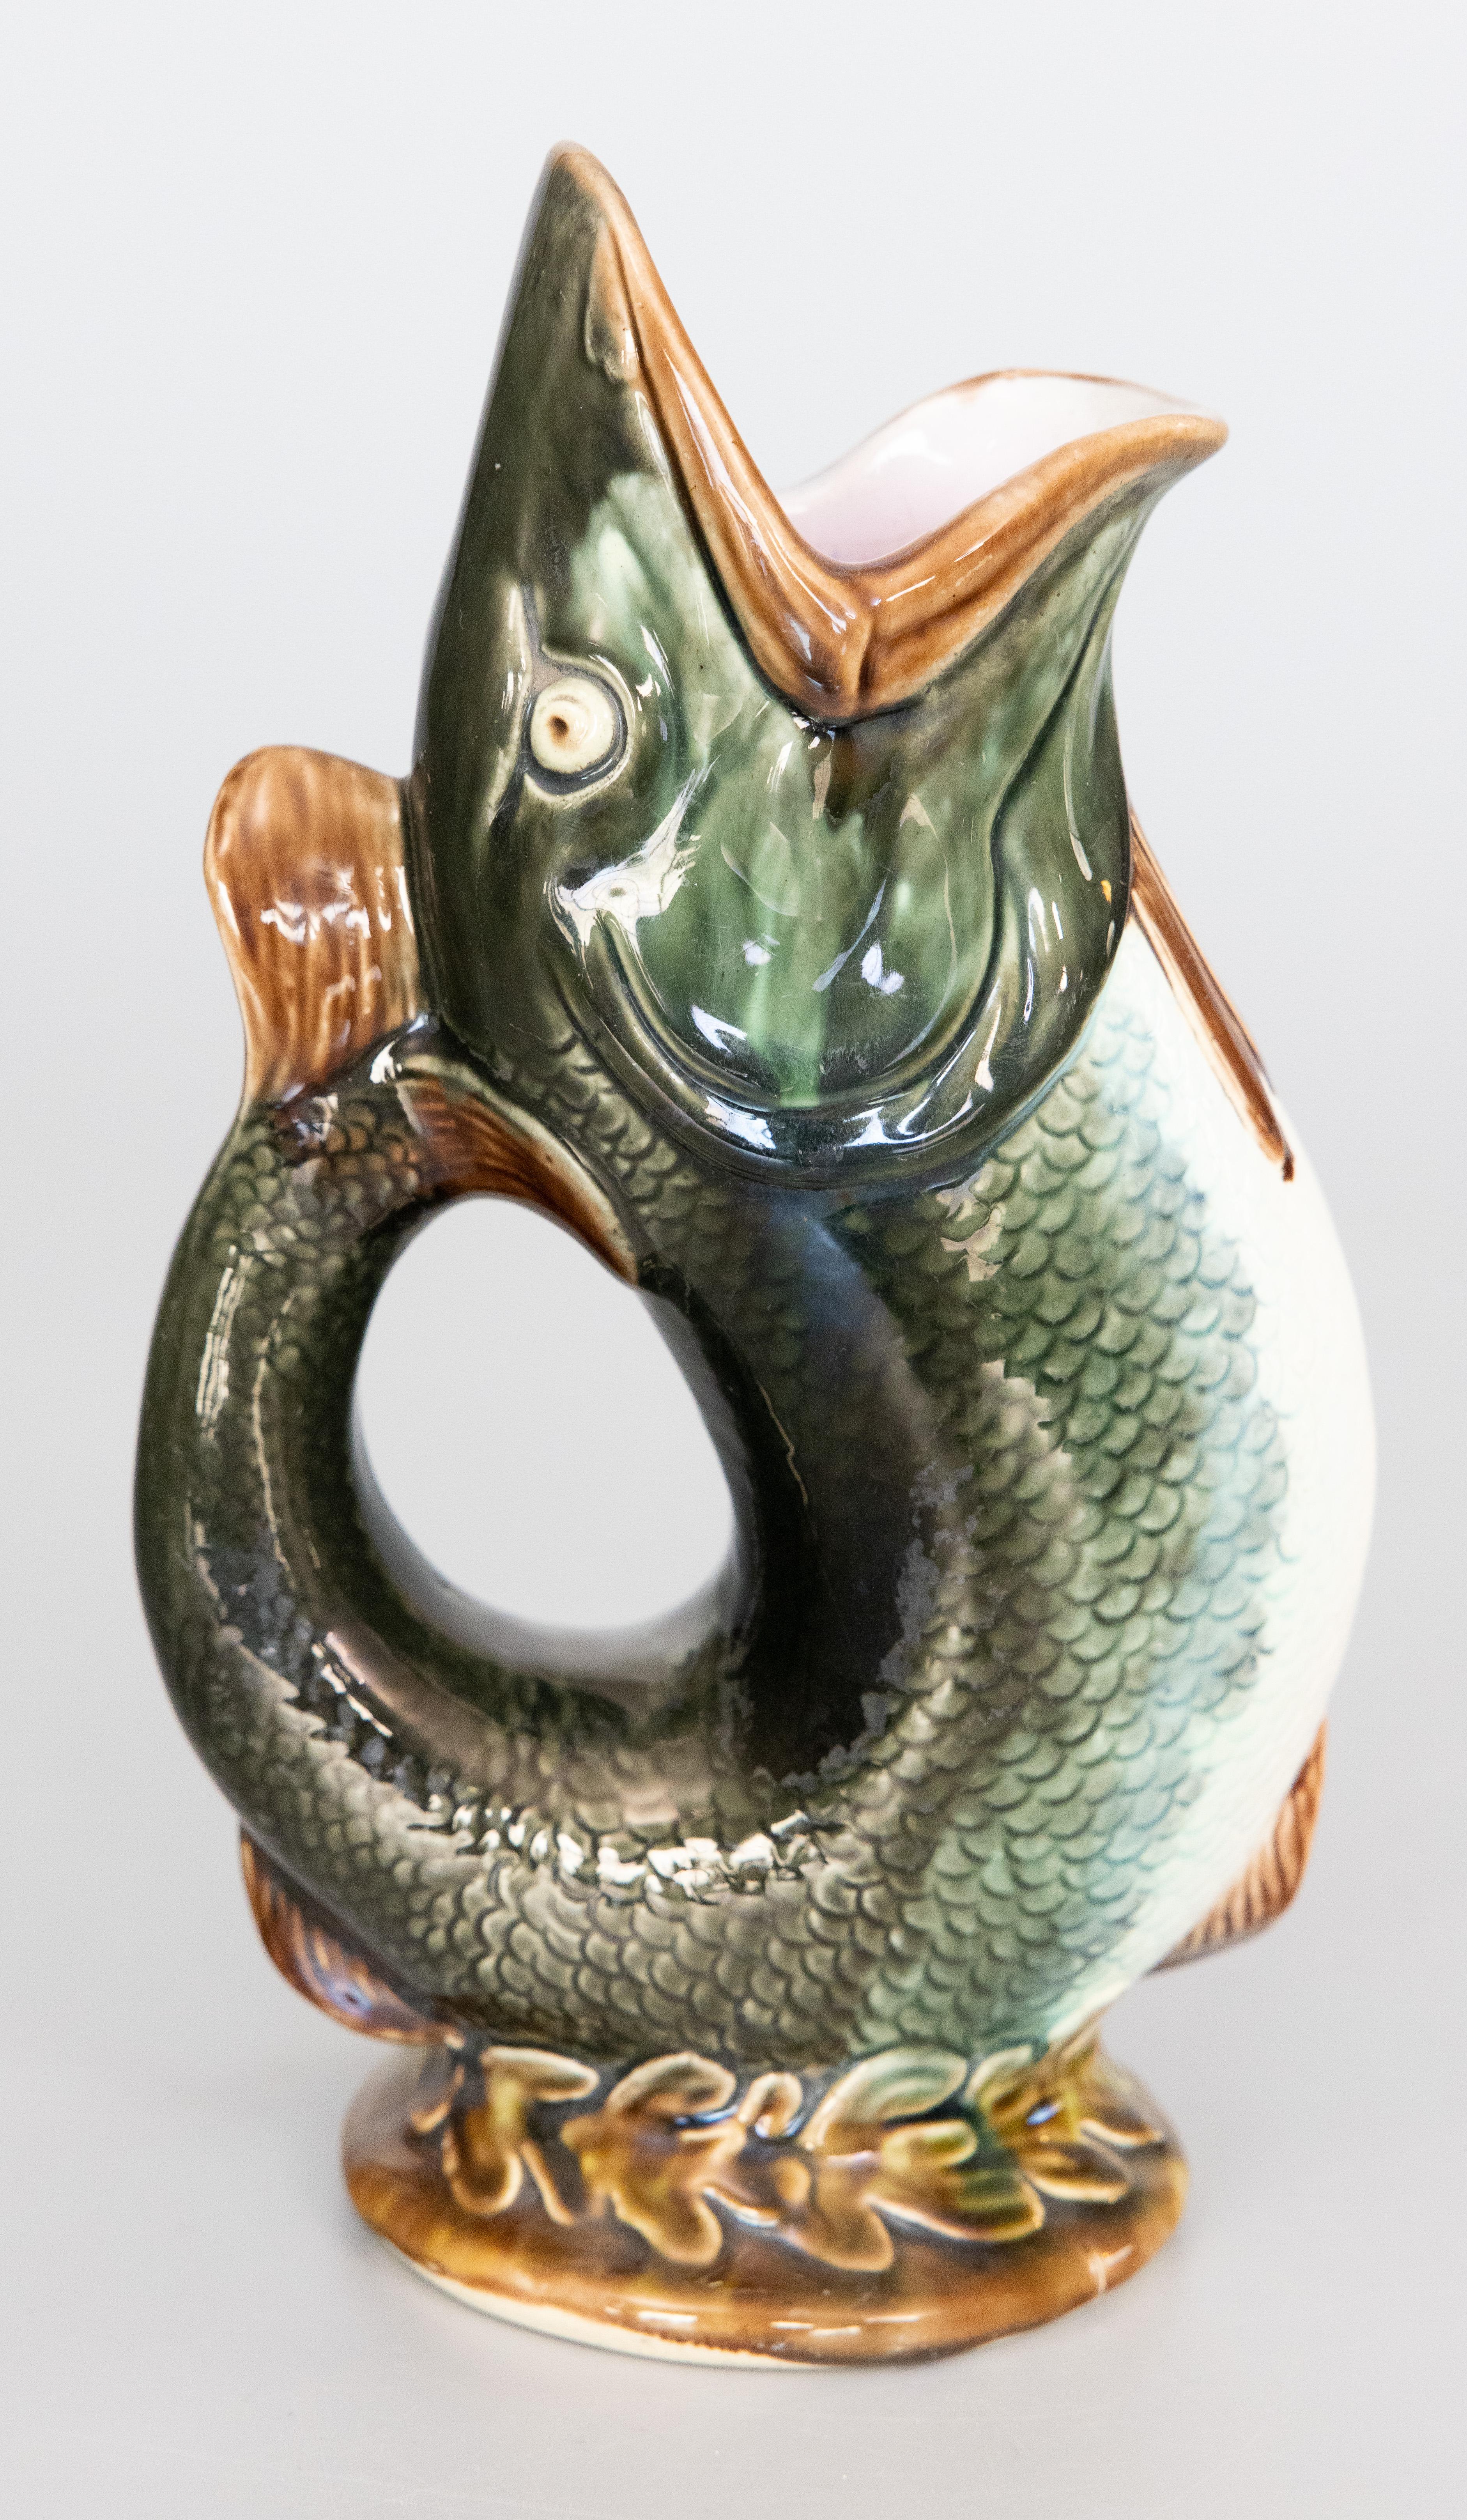 Superbe pichet ou cruche à glouglou en céramique anglaise majolique émaillée, vers 1880. Marque du fabricant au revers. Ce pichet fantaisiste en forme de poisson présente un design élégant dans une belle couleur vert foncé glacé avec une base